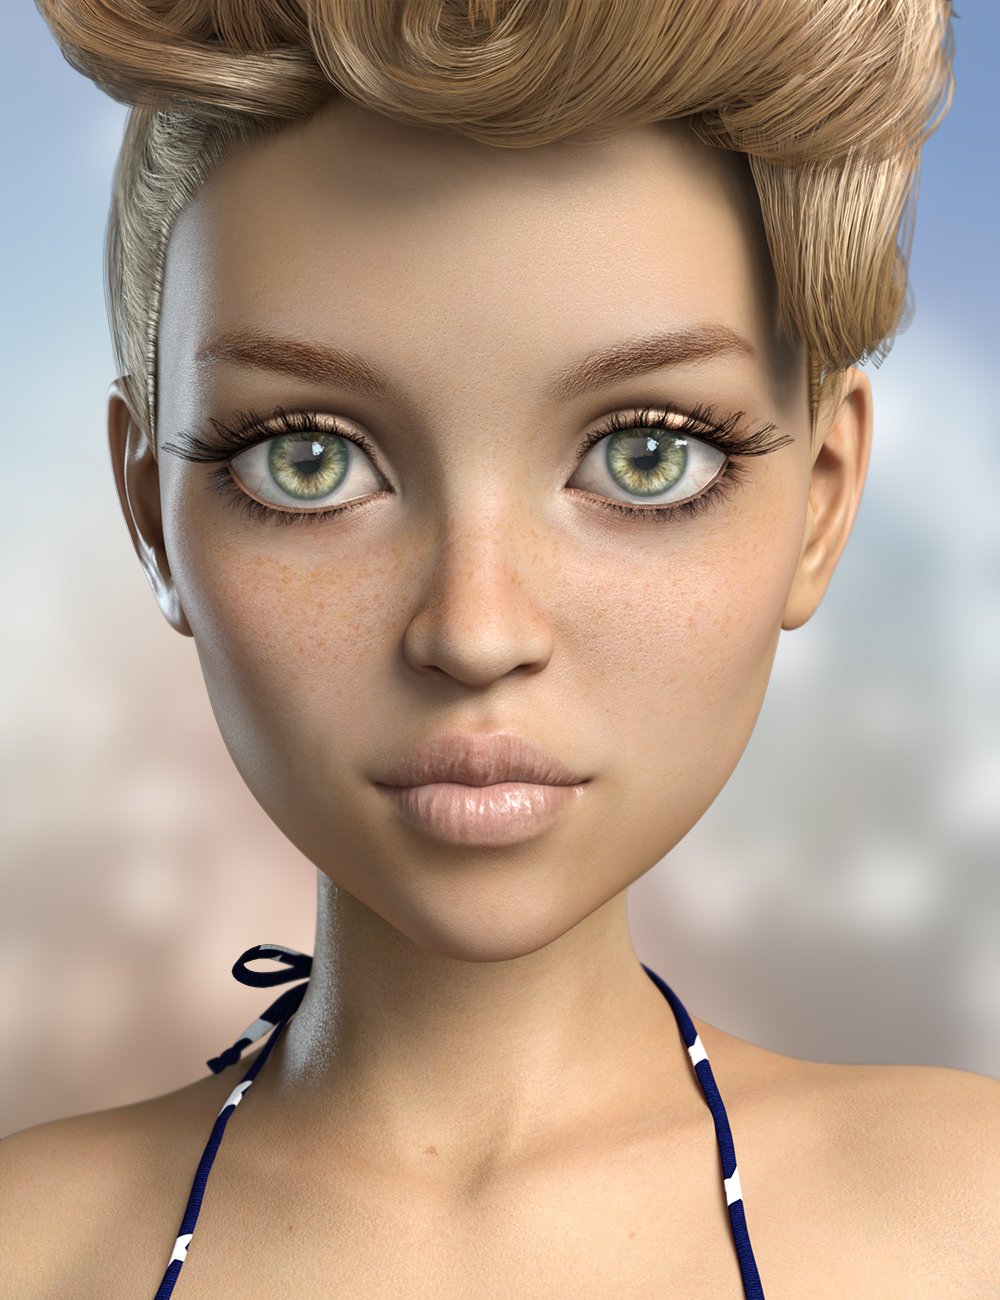 FWSA Lyla for The Girl 8 by: Fred Winkler ArtSabby, 3D Models by Daz 3D